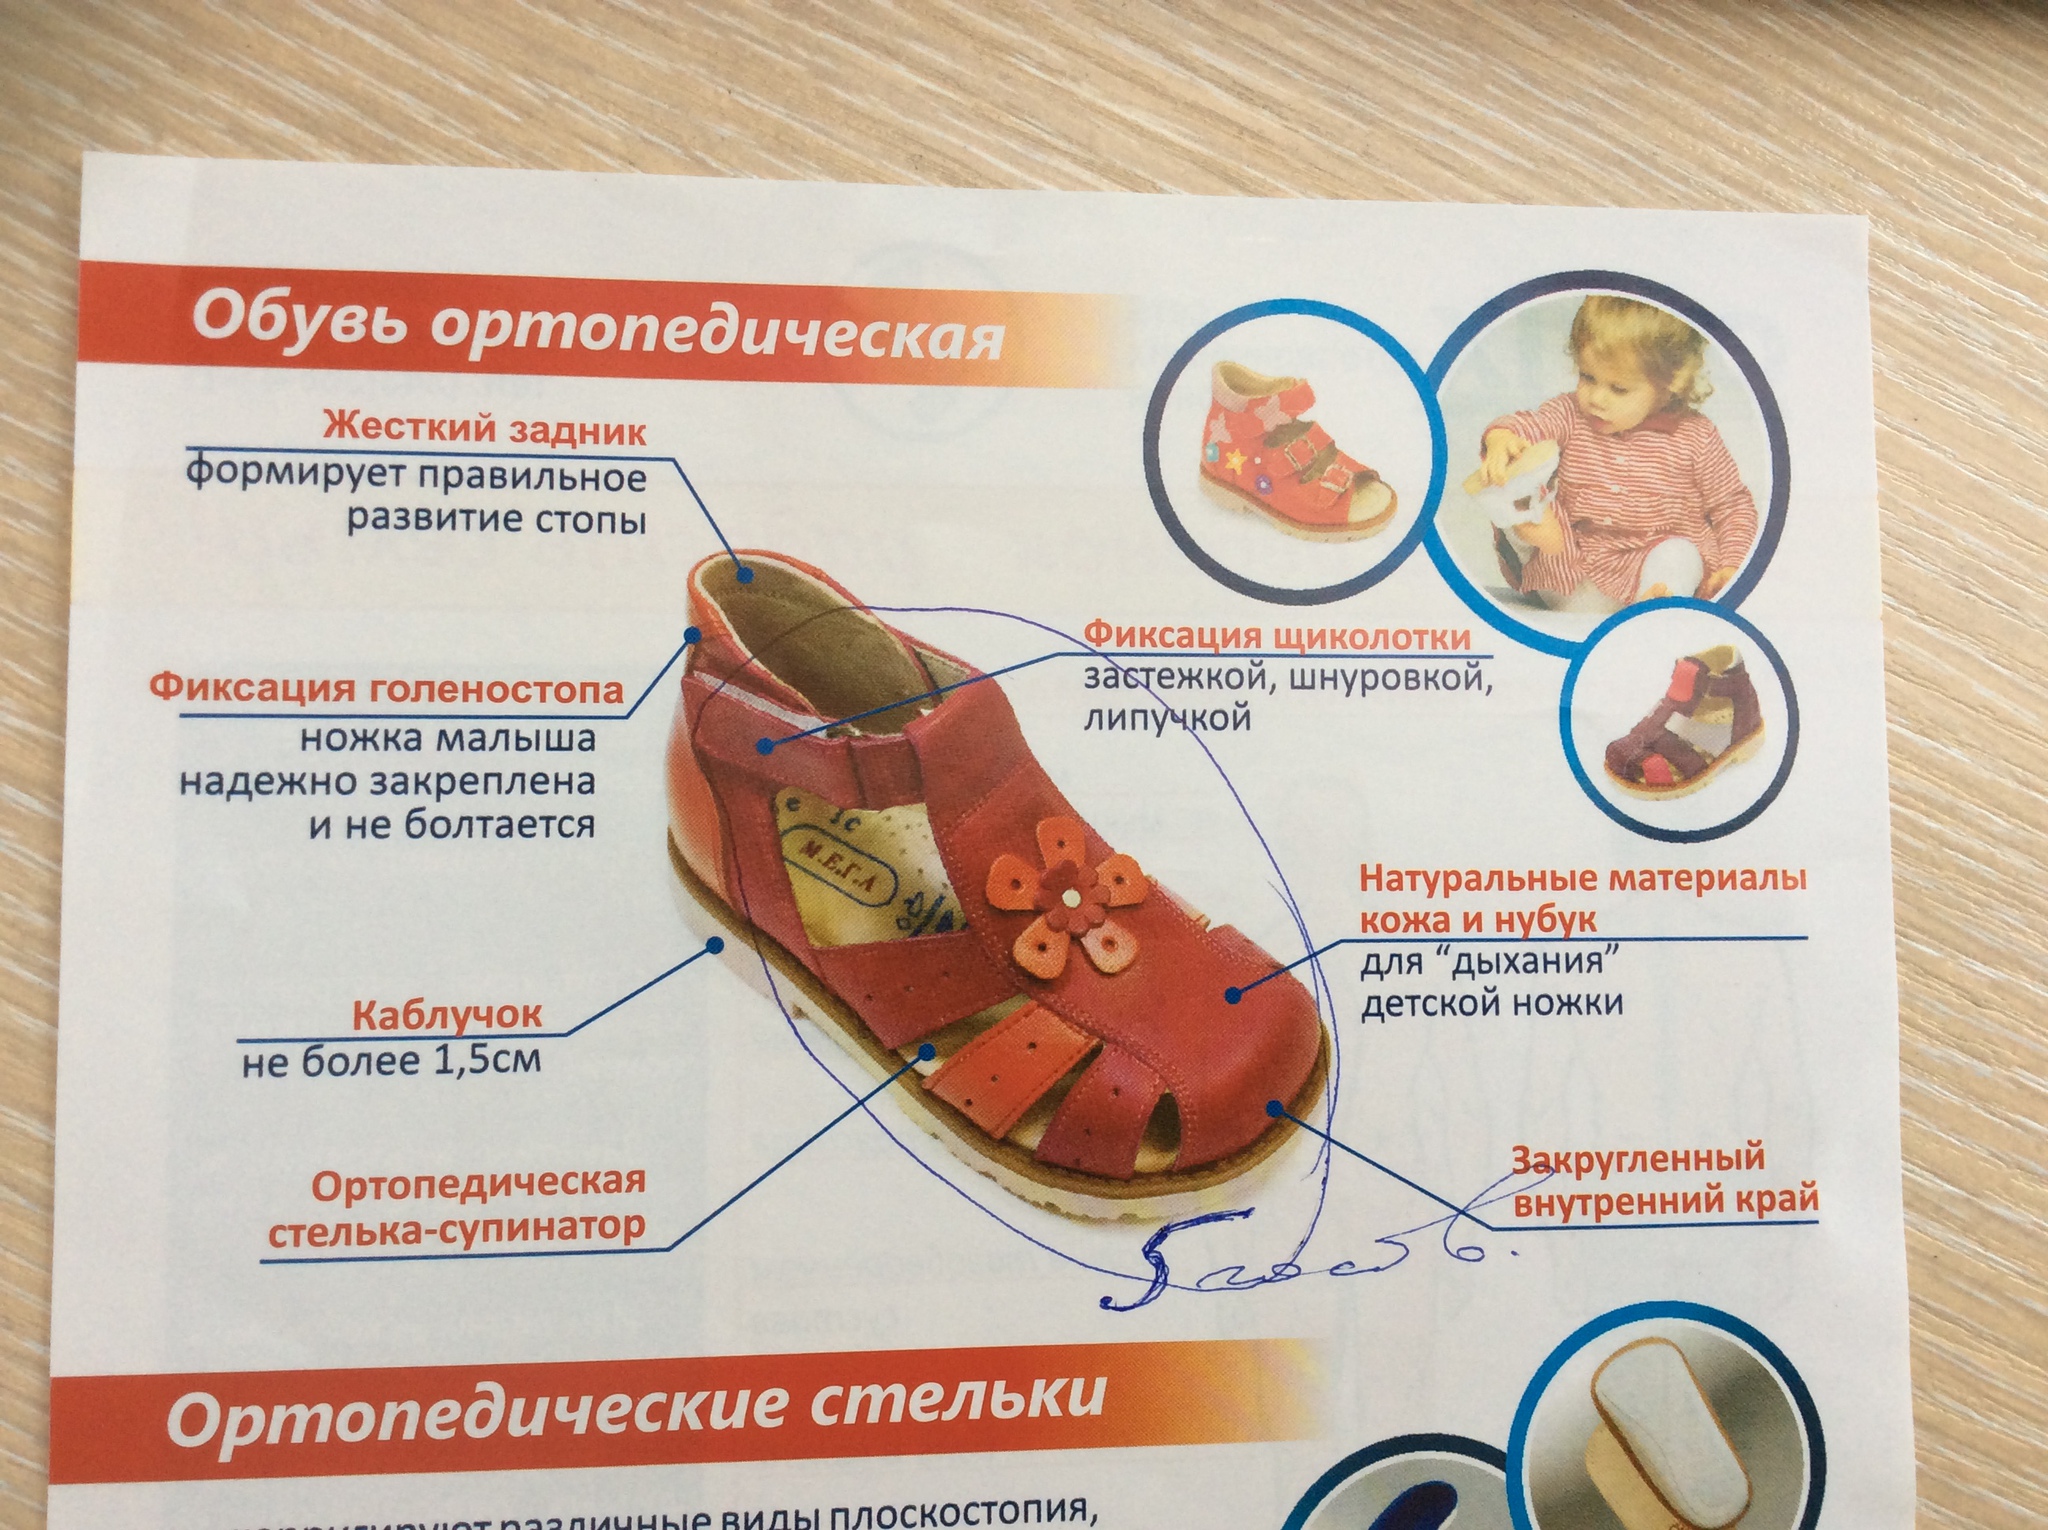 Как подобрать ортопедическую обувь. Ортопедические обув для детей. Правильная обувь для детей. Правильная ортопедическая обувь. Правильная ортопедическая обувь для детей.